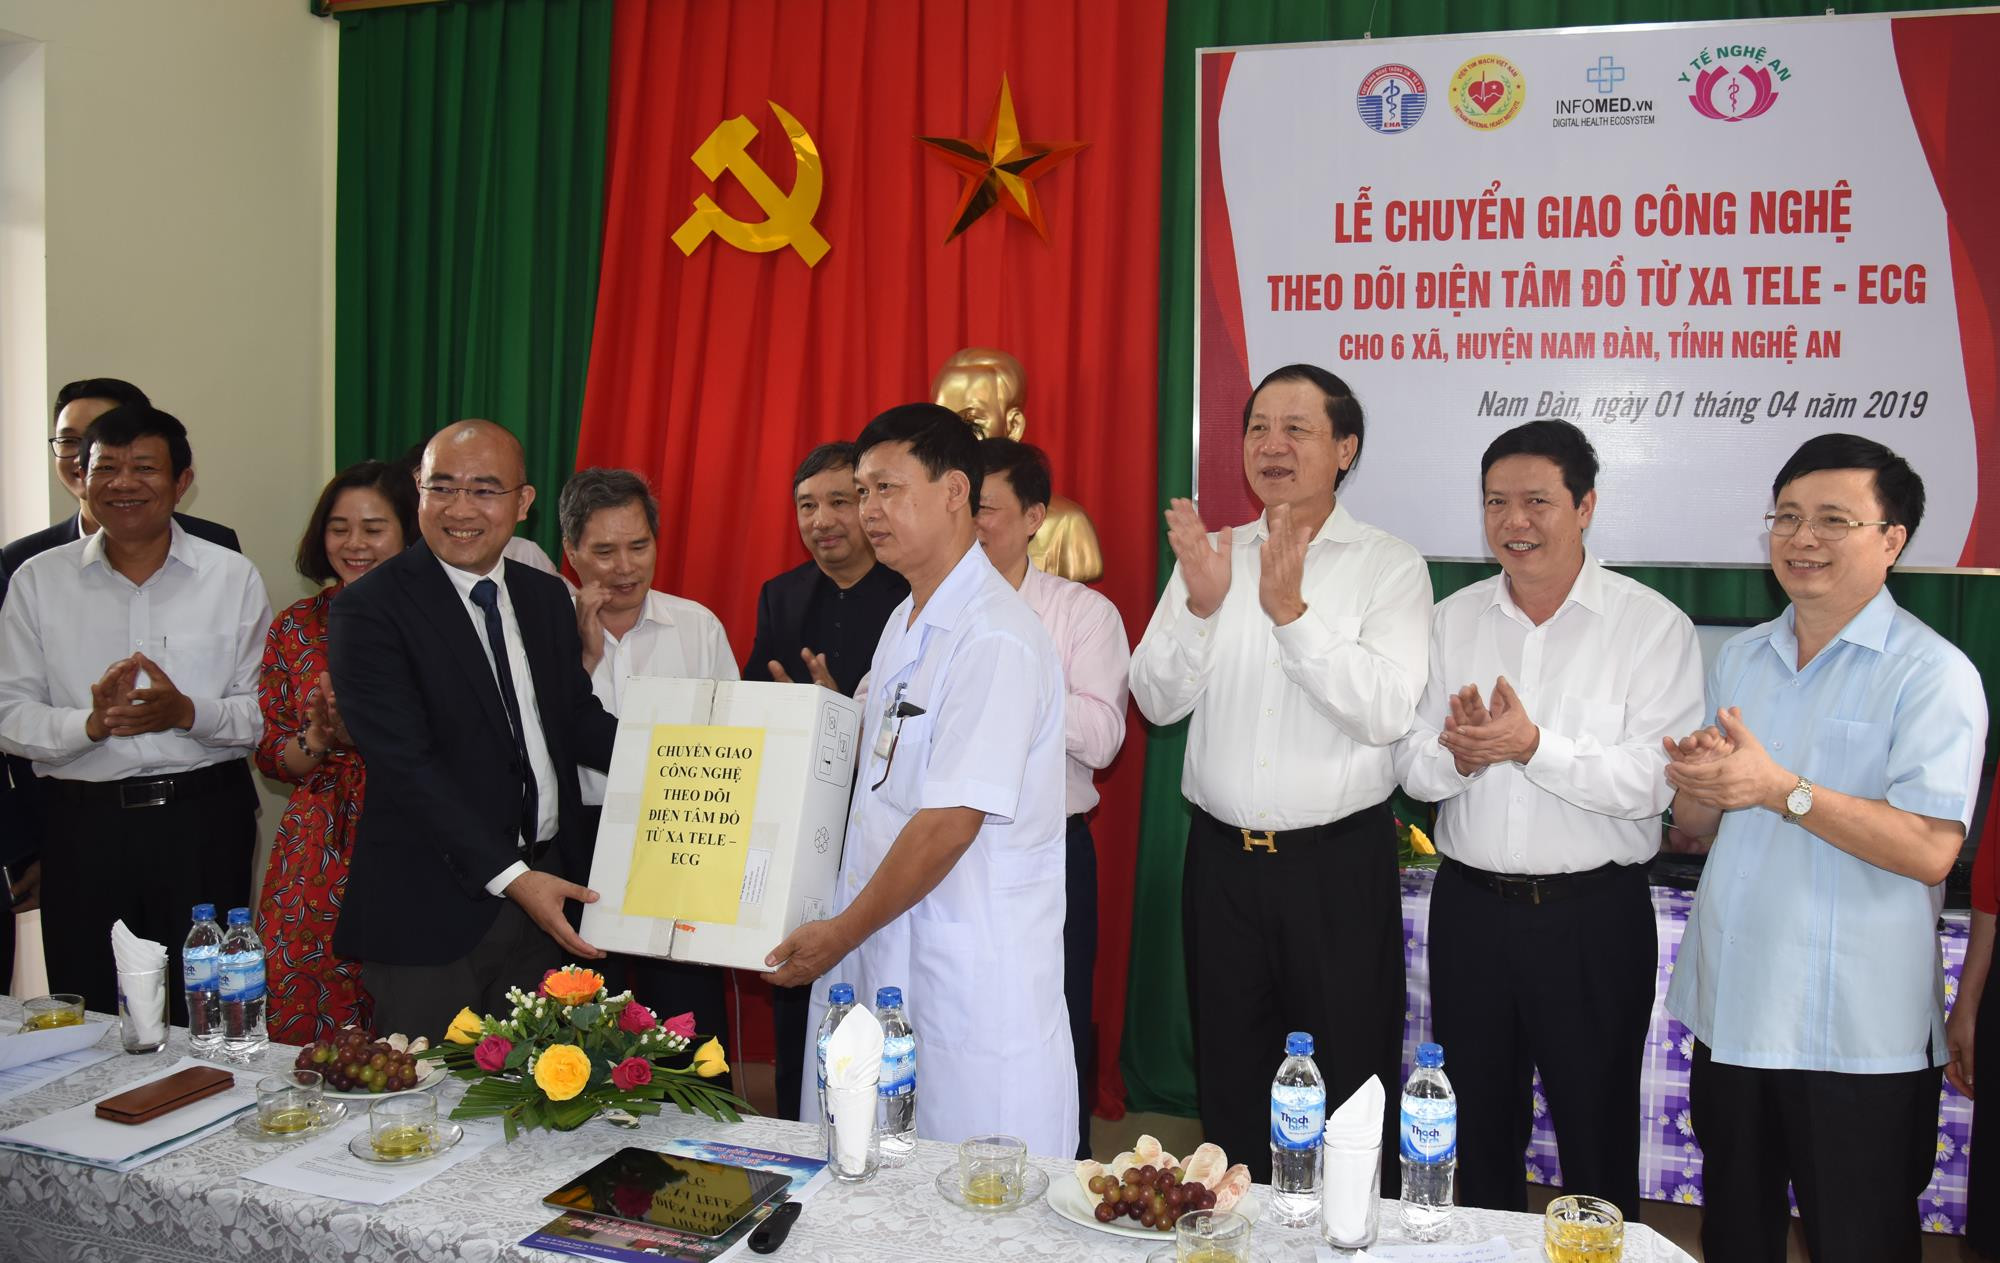 Trạm Y tế Nam Thái, huyện Nam Đàn nhận công nghệ được chuyển giao từ Cục Công nghệ Thông tin Bộ Y tế. Ảnh: Thành Chung